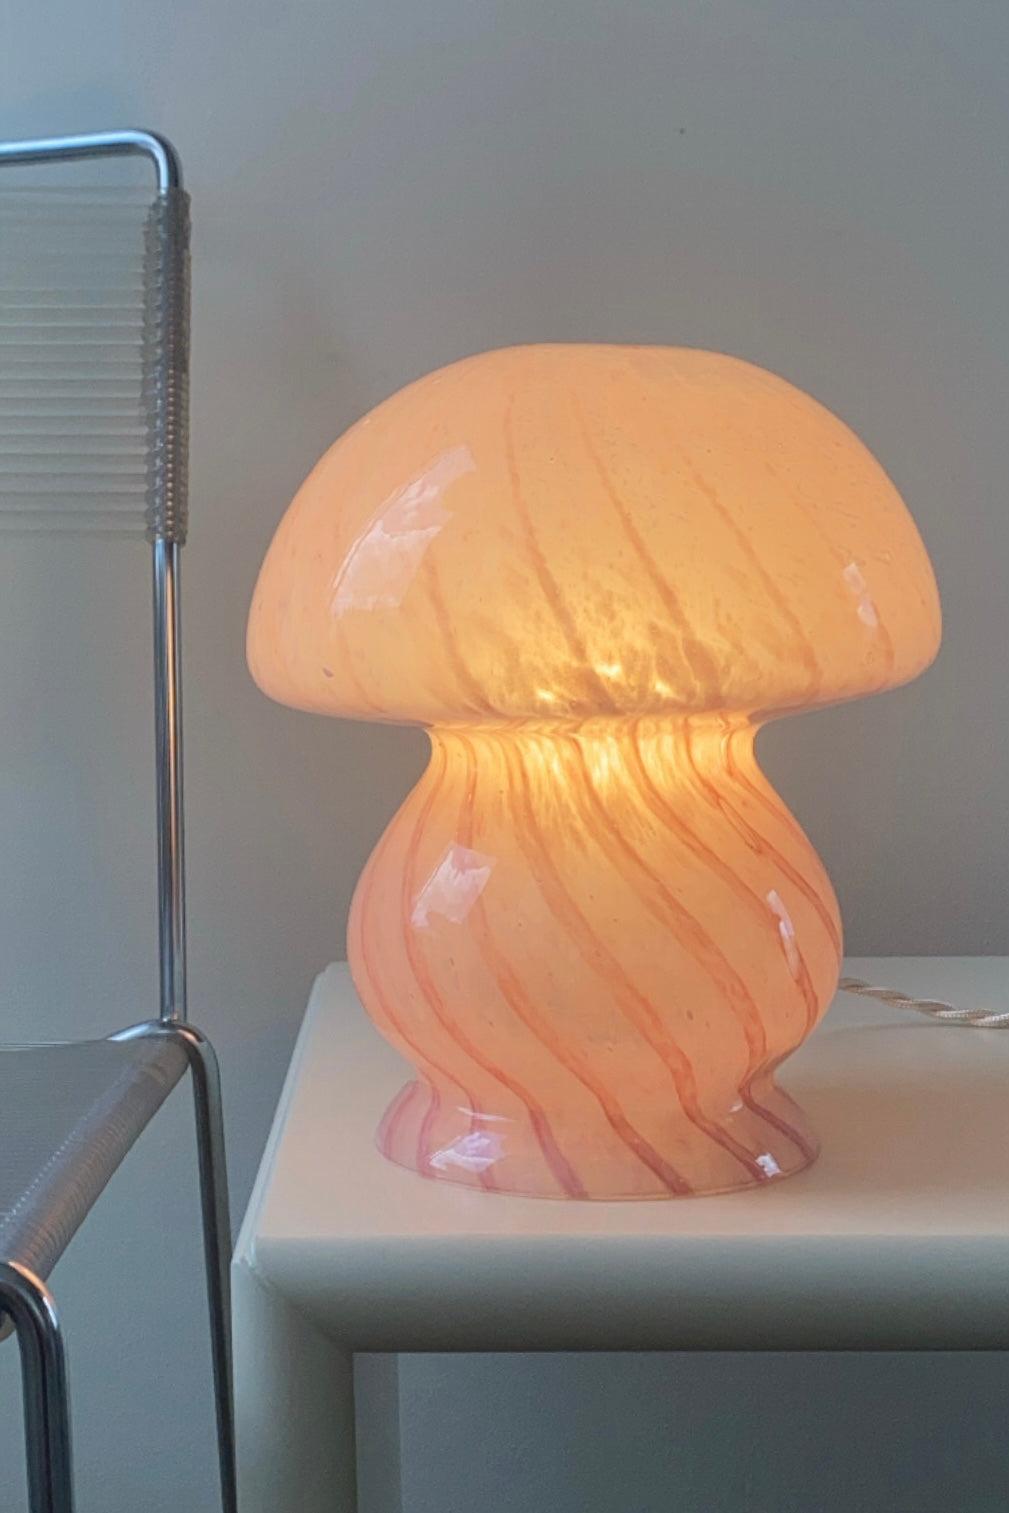 Vintage Murano lampe de table champignon bébé. Lampe soufflée à la bouche en verre rose / rose avec tourbillon. La taille parfaite pour une table de chevet. Fabriqué à la main en Italie, il est livré avec un nouveau cordon blanc.

H:22cm D:18cm. 


